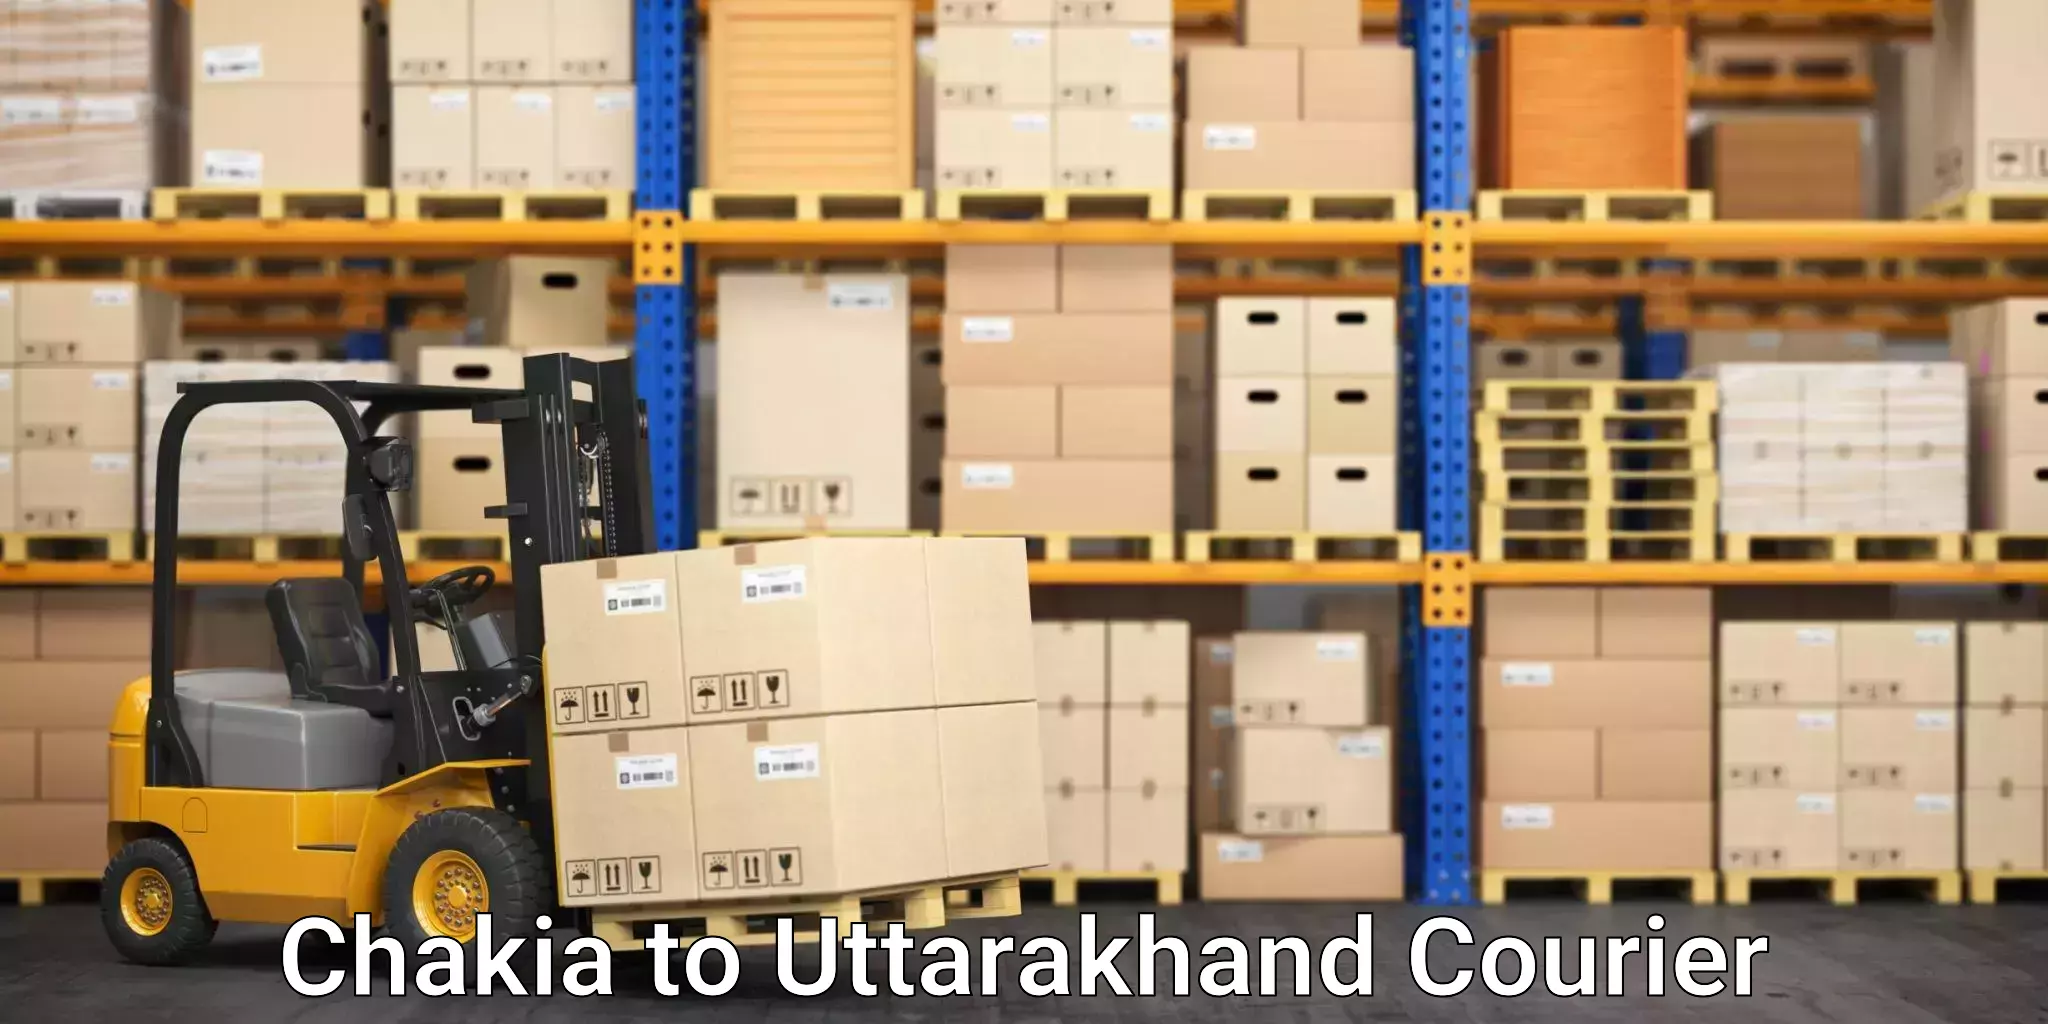 Efficient moving company Chakia to Udham Singh Nagar